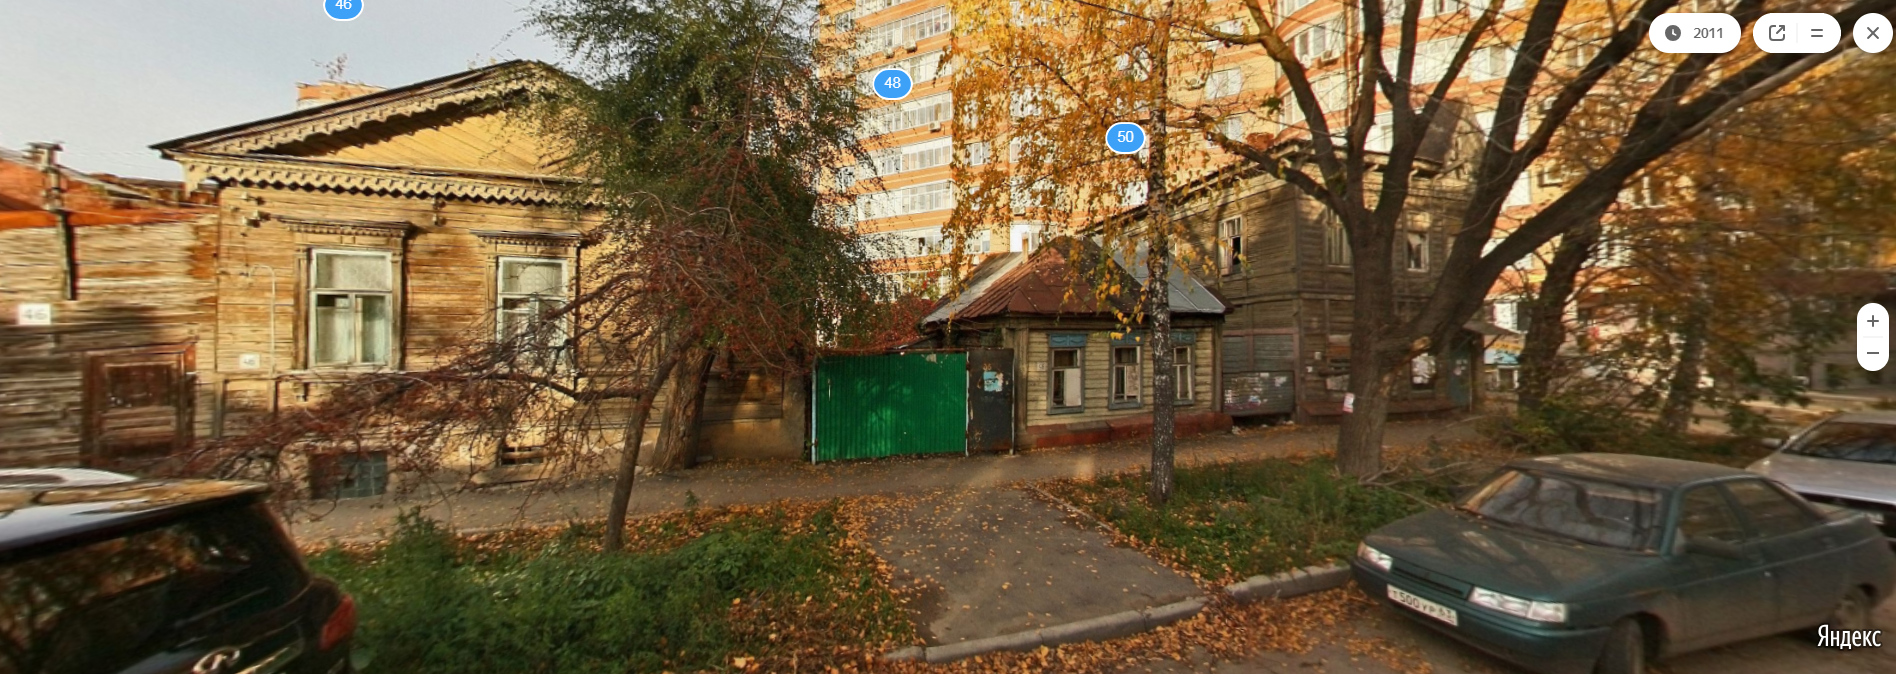 В центре - дом крестьянки Кистеневой на Яндекс.Панораме в 2011 году